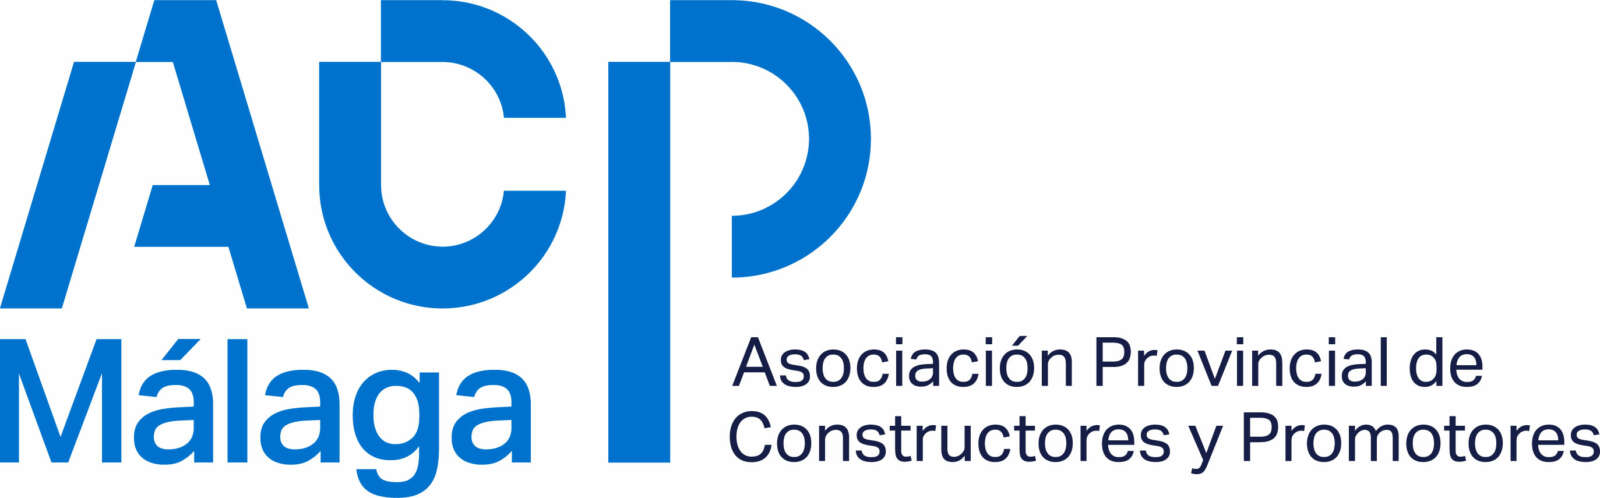 ACP Málaga-Asoc. Provincial Constructores y Promotores Málaga